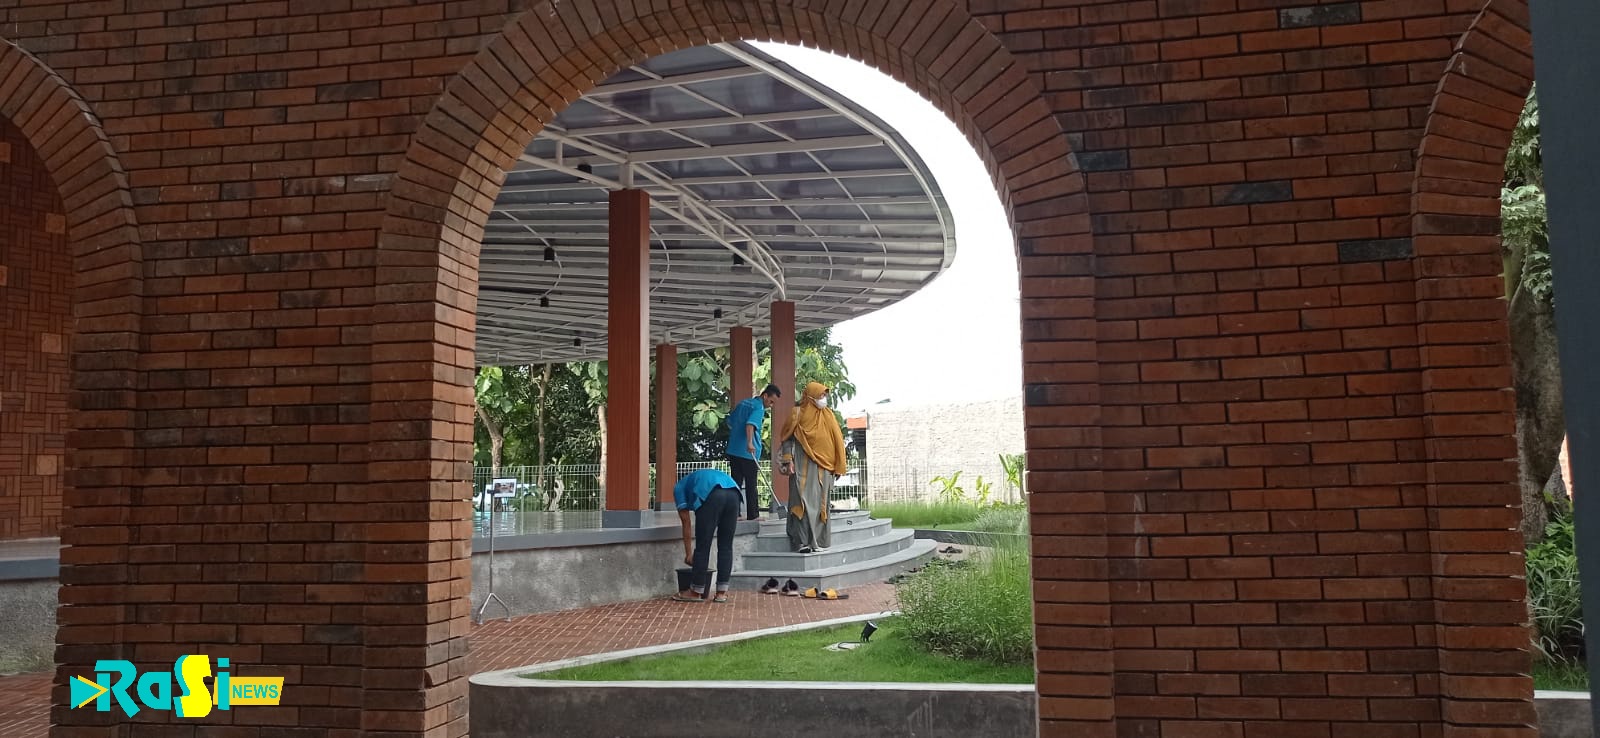 Buka 24 Jam, Ini Keistimewaan Masjid Bani Solan Yang Berada di Jalan Raya Sukomoro.